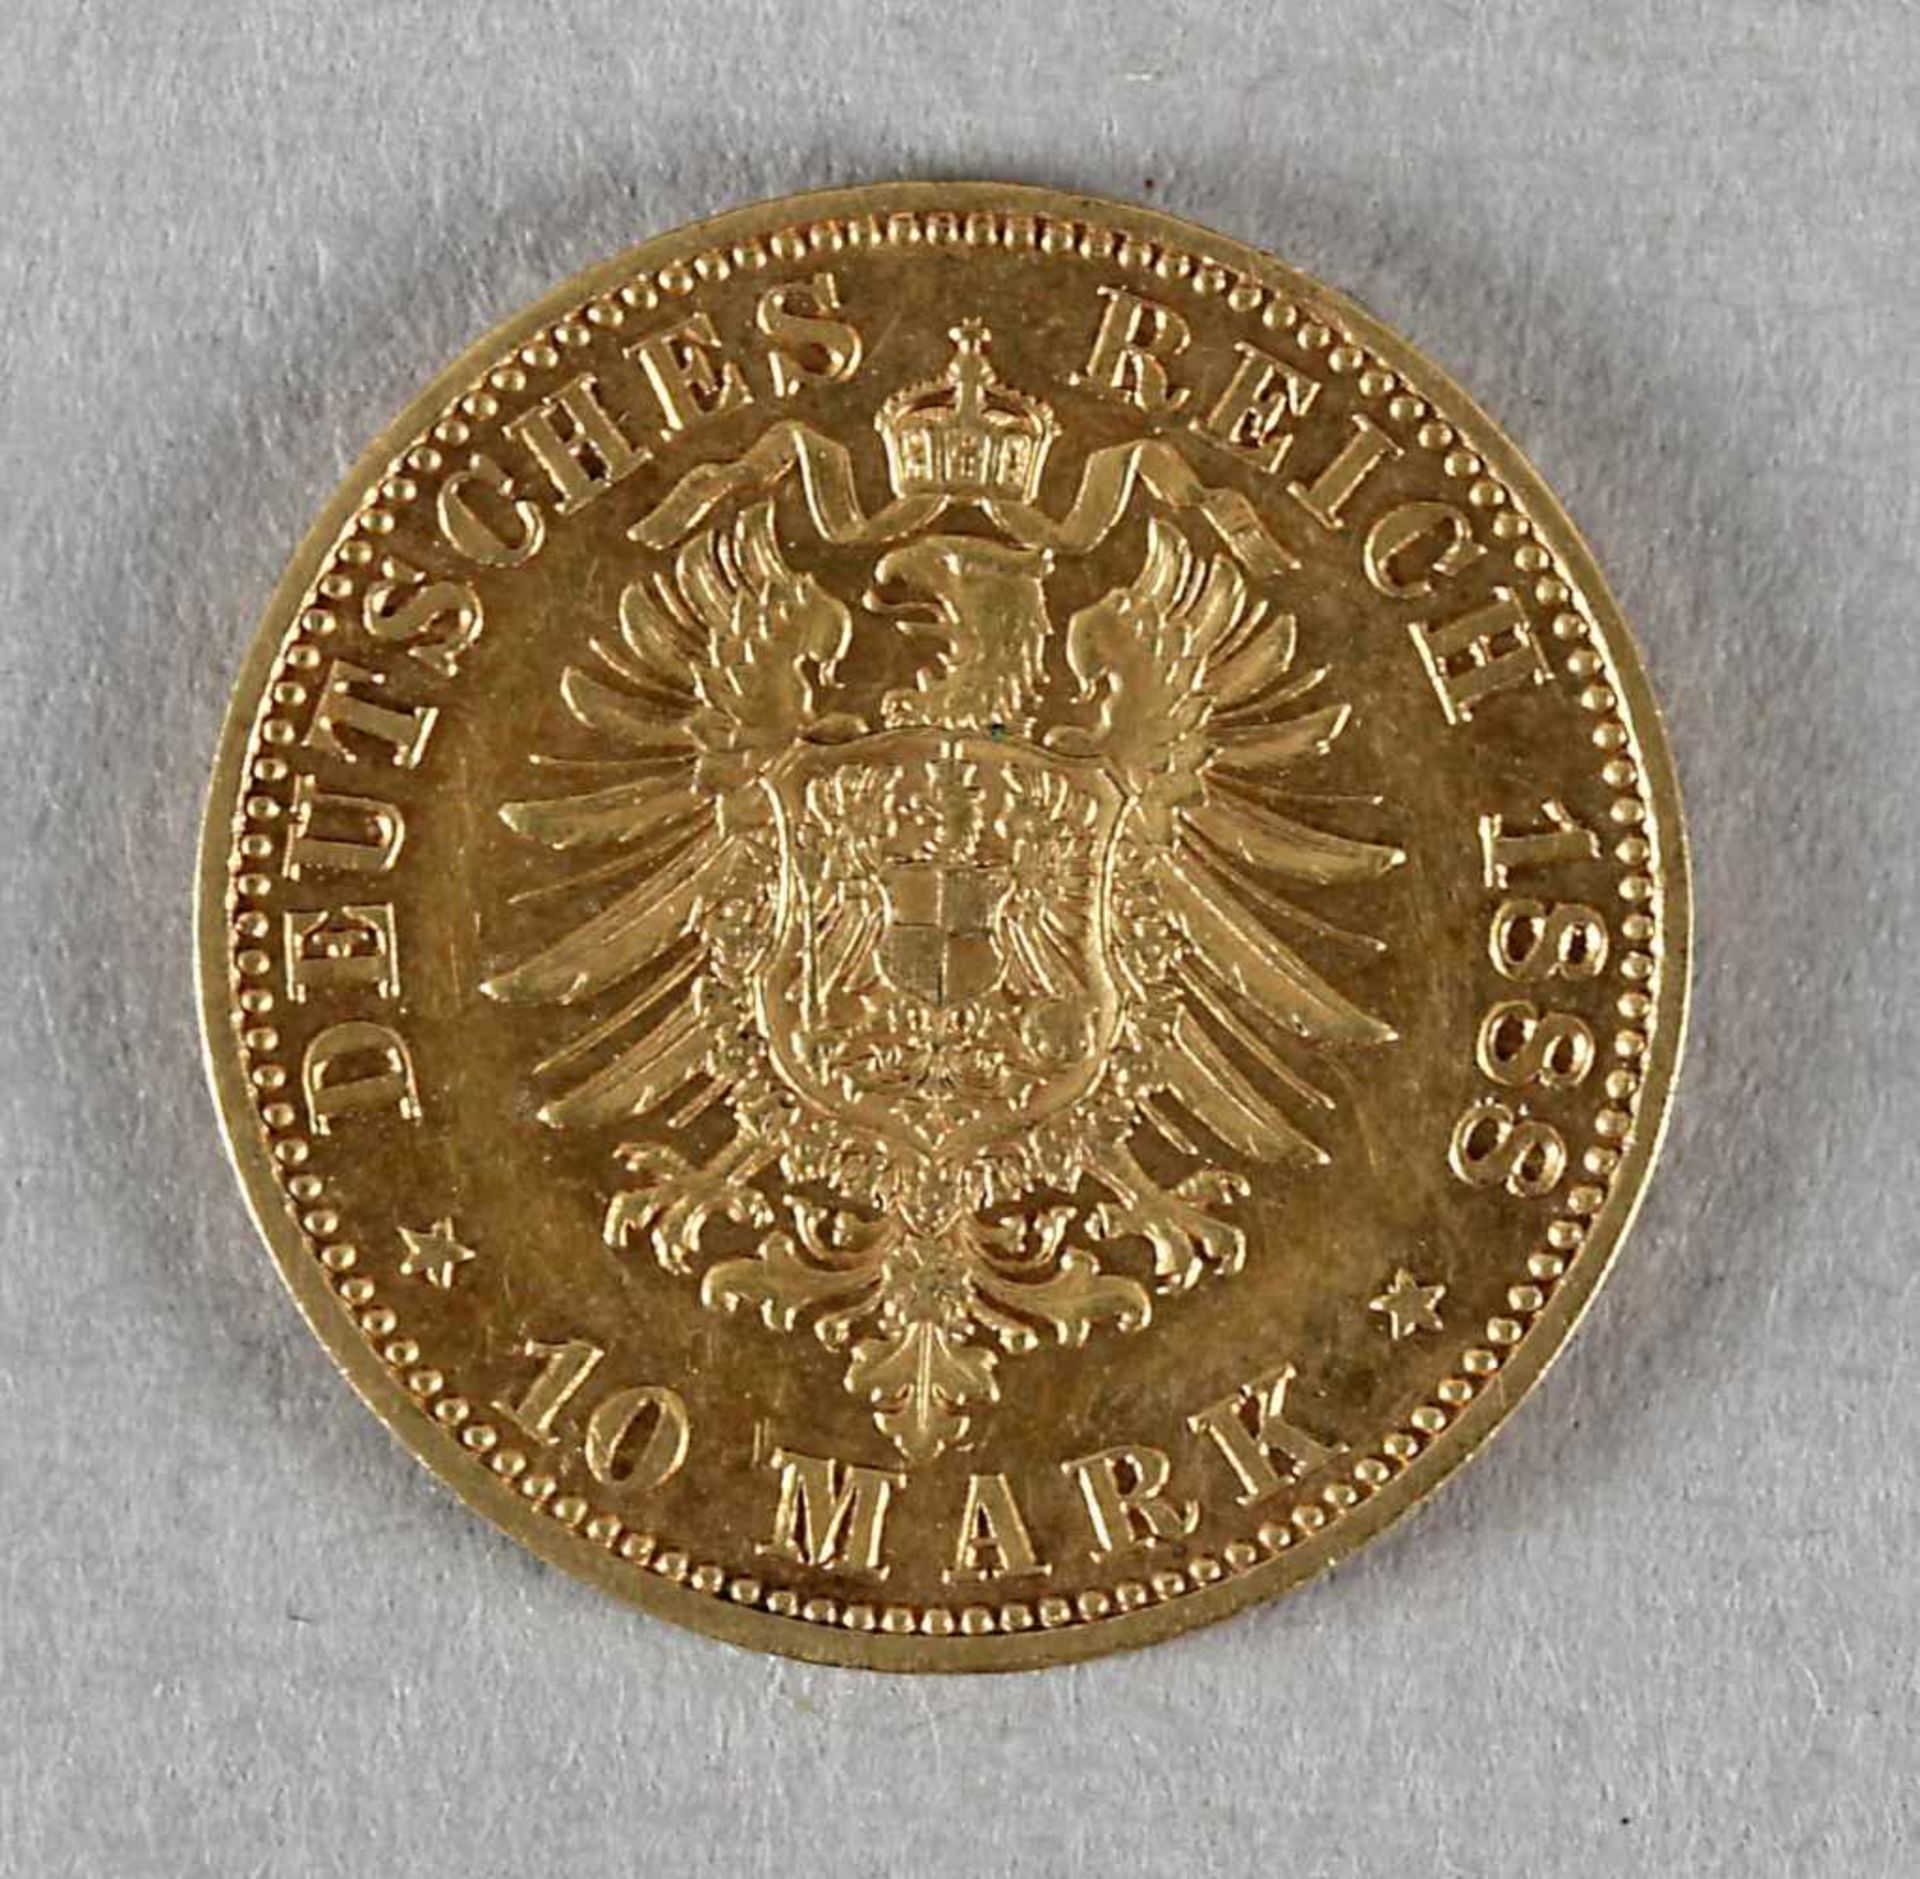 Goldmünze, 10 Mark, Friedrich III. von Preußen, 1888 A - Bild 2 aus 2